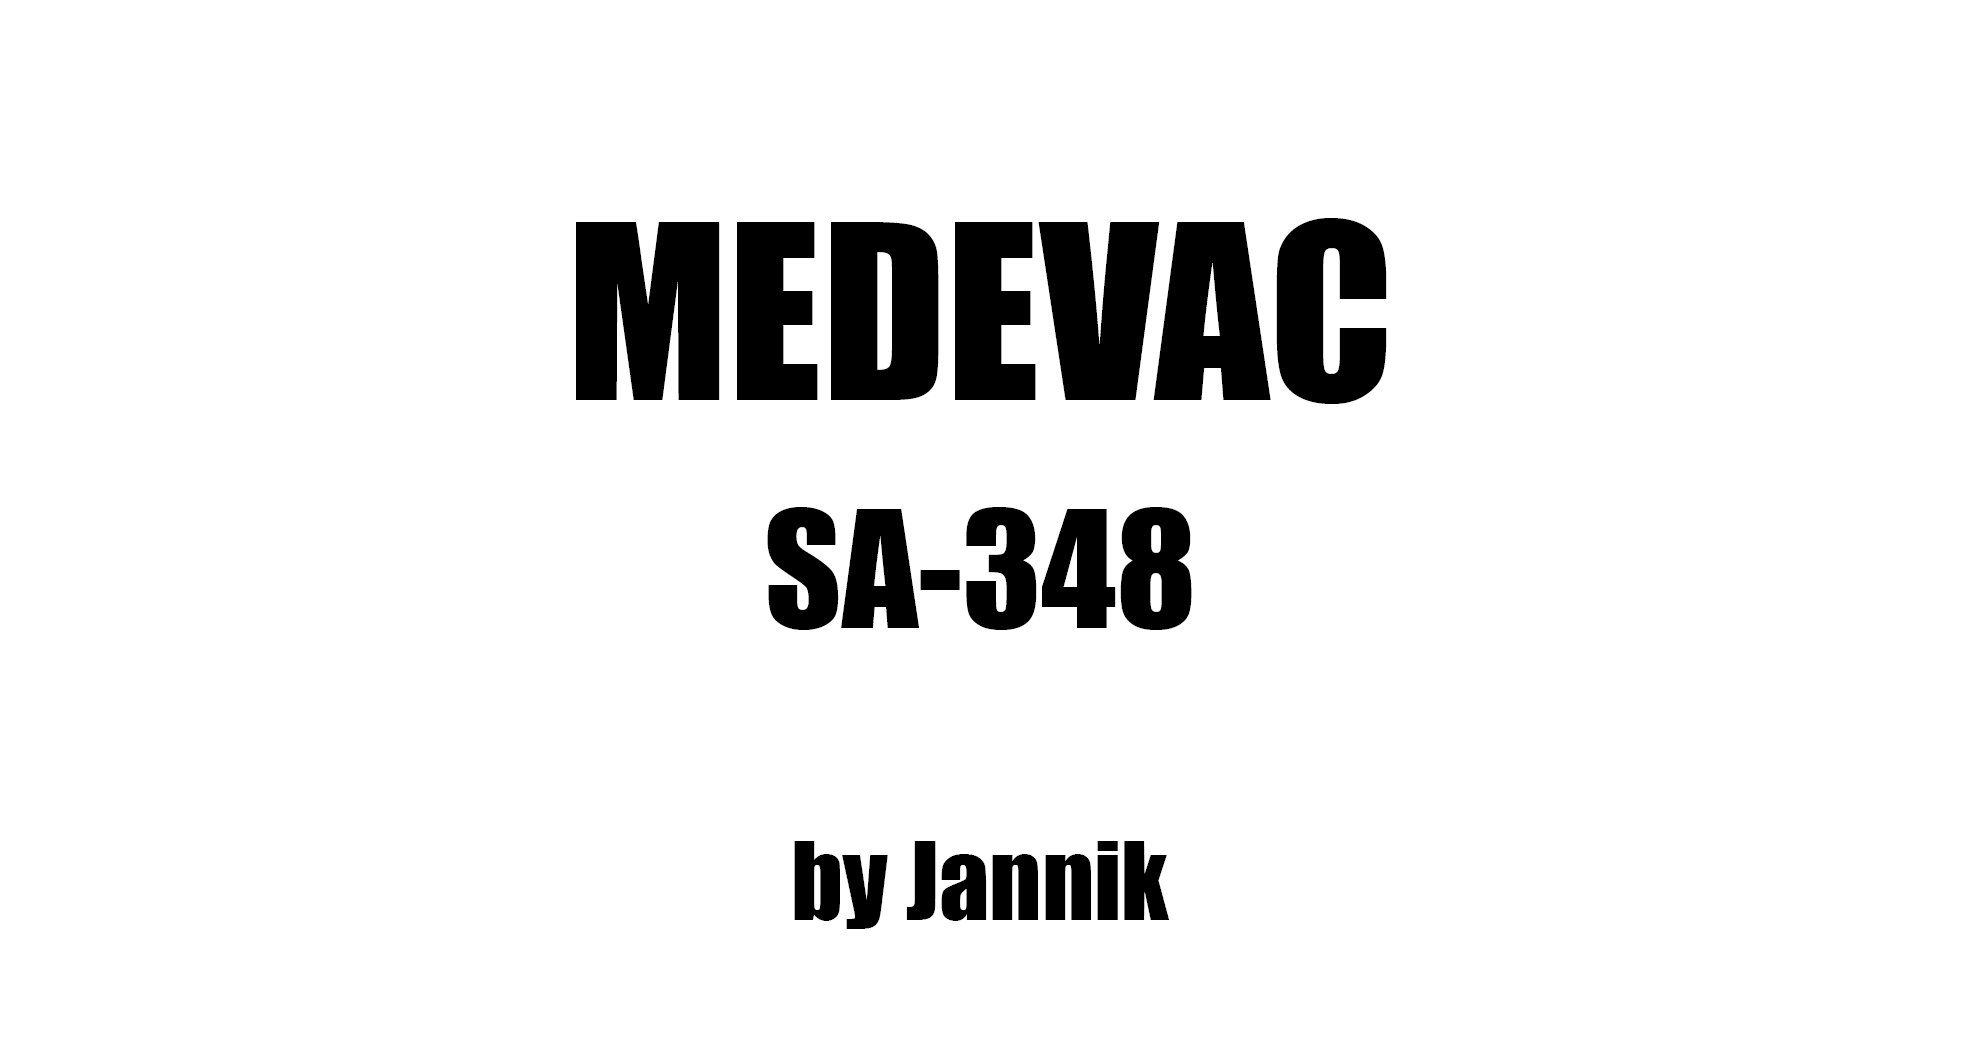 SA-348 MEDEVAC